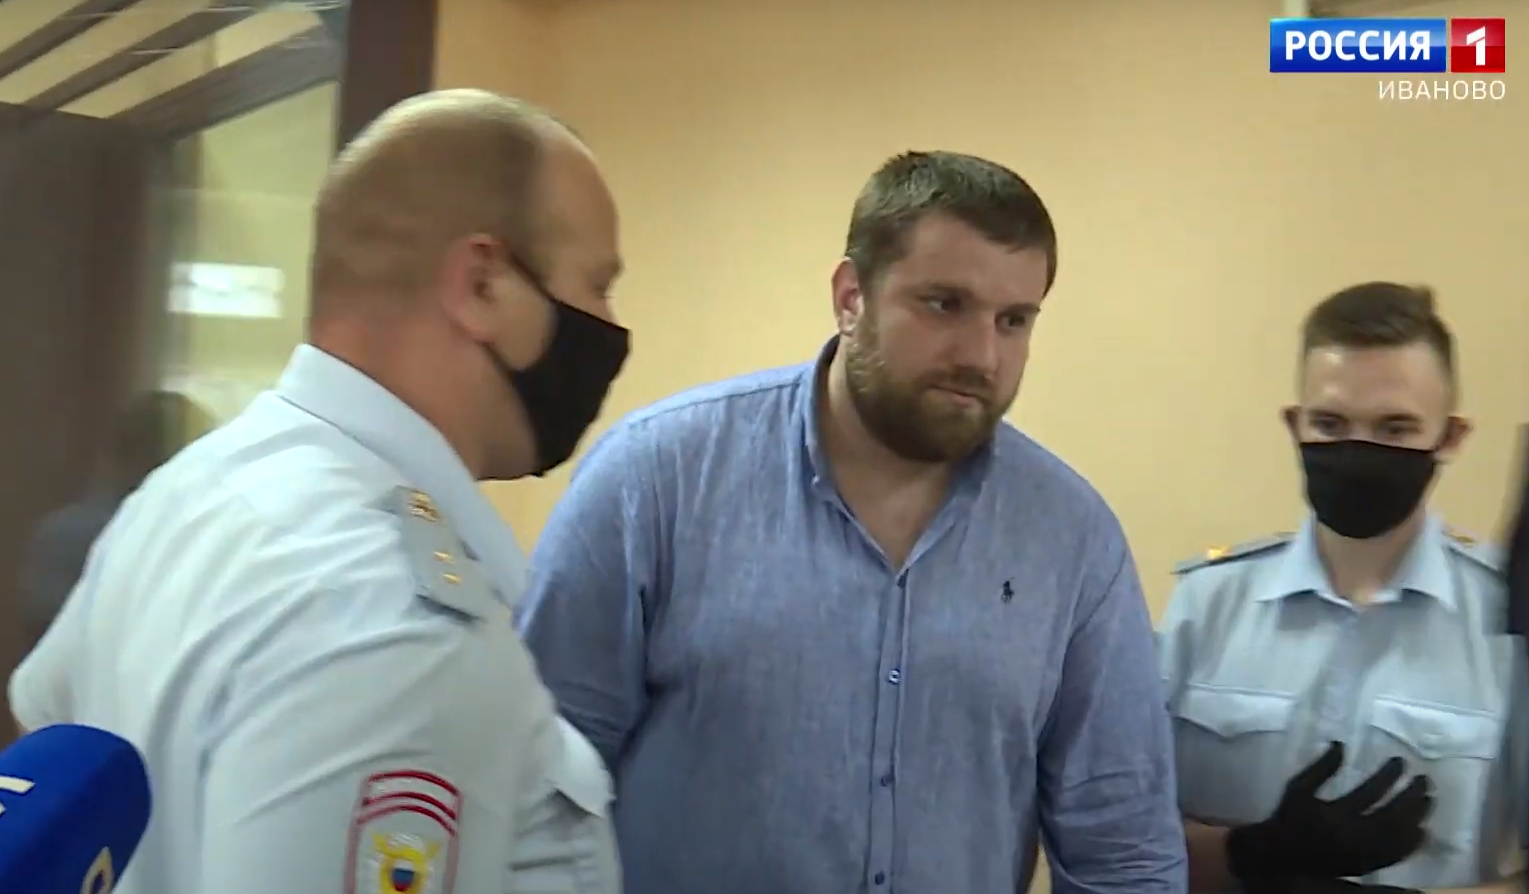 Ивановский облсуд начал рассмотрение апелляционных жалоб по резонансному делу об убийстве у клуба "Рокко"